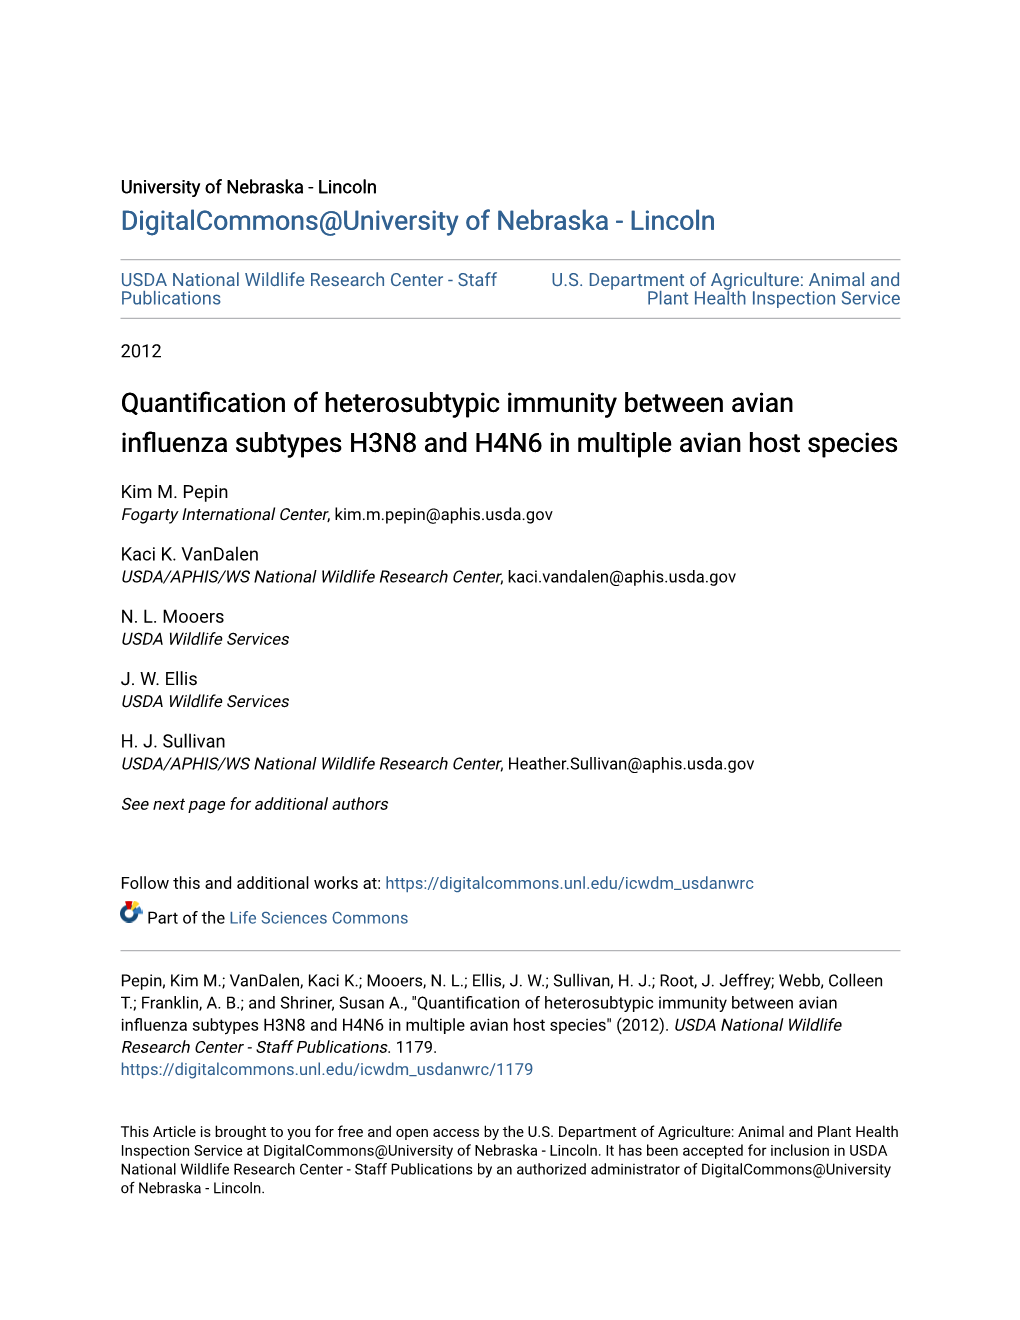 Quantification of Heterosubtypic Immunity Between Avian Influenza Subtypes H3N8 and H4N6 in Multiple Viana Host Species